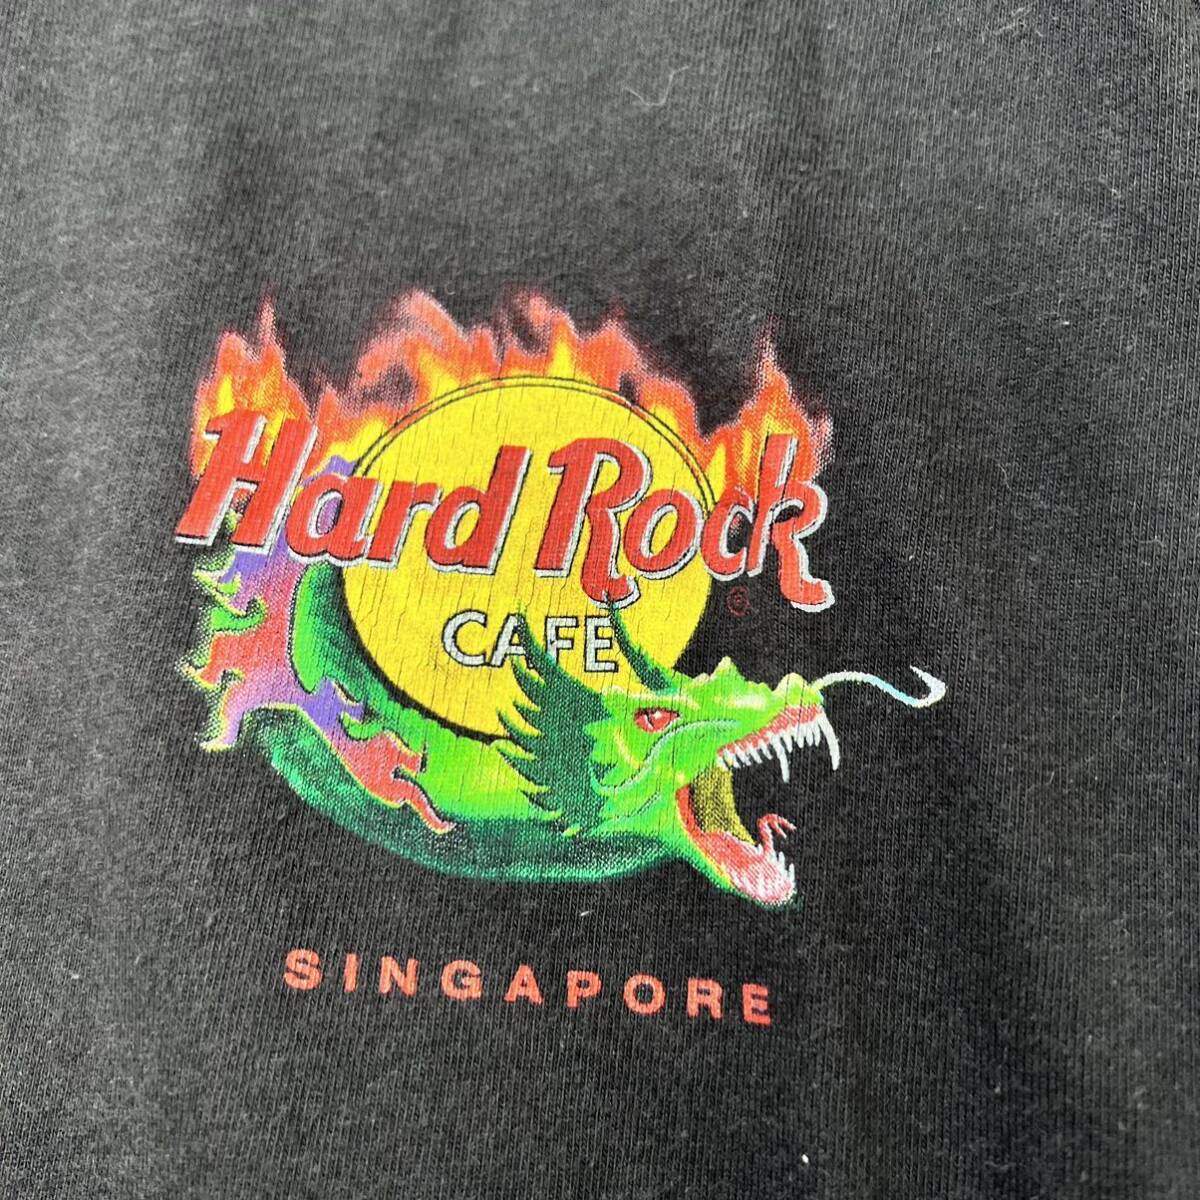 Hard Rock cafe Singapore ハードロックカフェ シンガポール バックプリントTシャツ 黒 ブラック クルーネック 古着 半袖プリント A5414の画像5